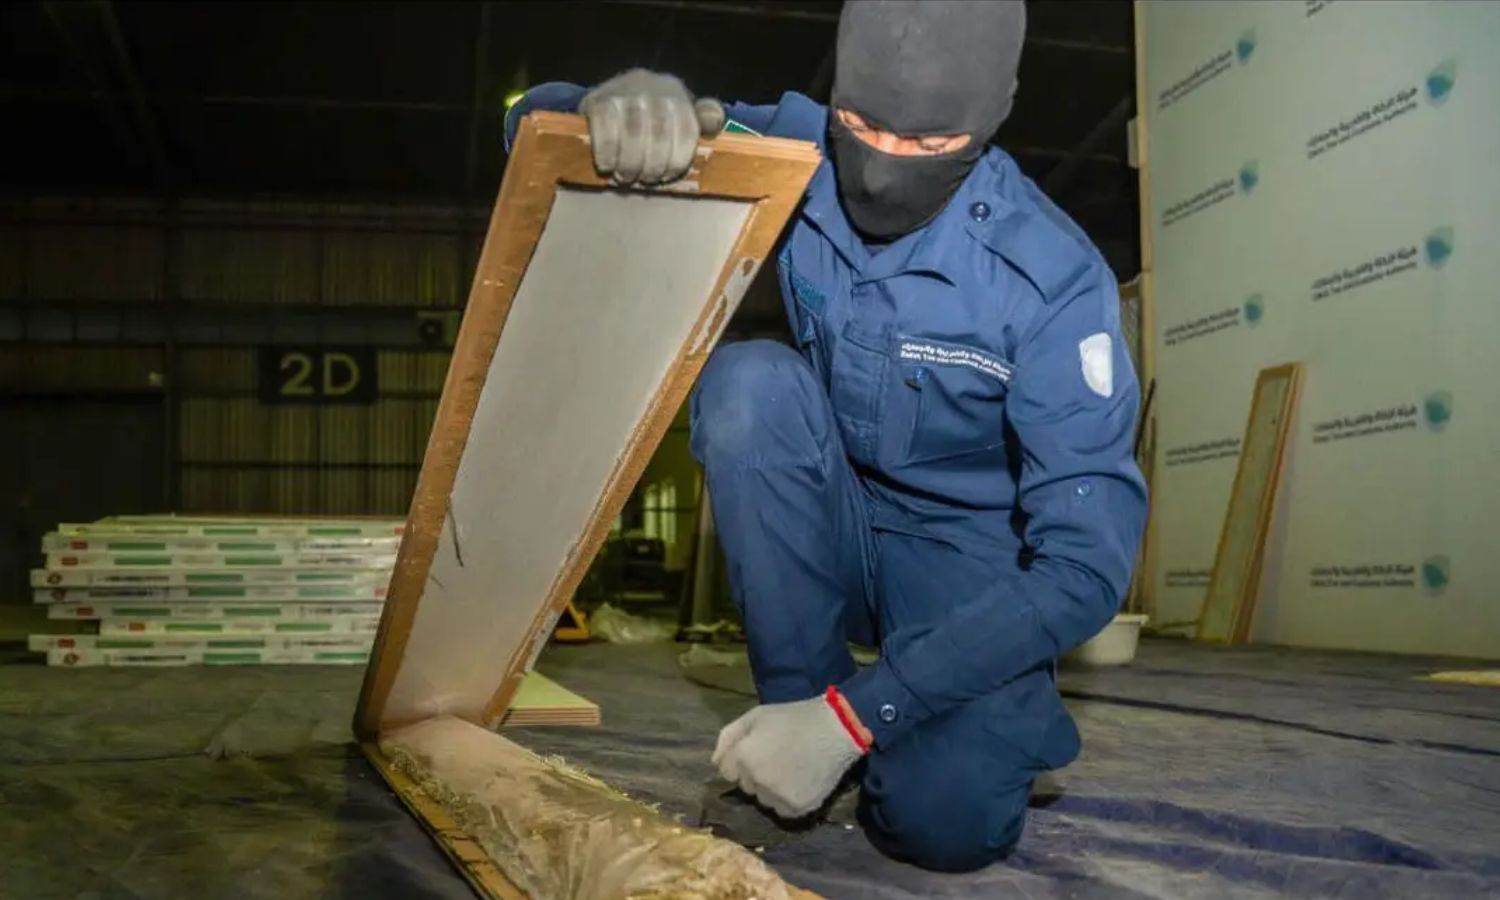 عنصر من هيئة الزكاة والضريبة والجمارك السعودية يفتح لوحًا خشبيًا يحتوي أقراًا مخدرة خلال محاولة تهريب شحنة إلى السعودية عبر ميناء جدة الإسلامي- 15 من أيار 2023 (واس)